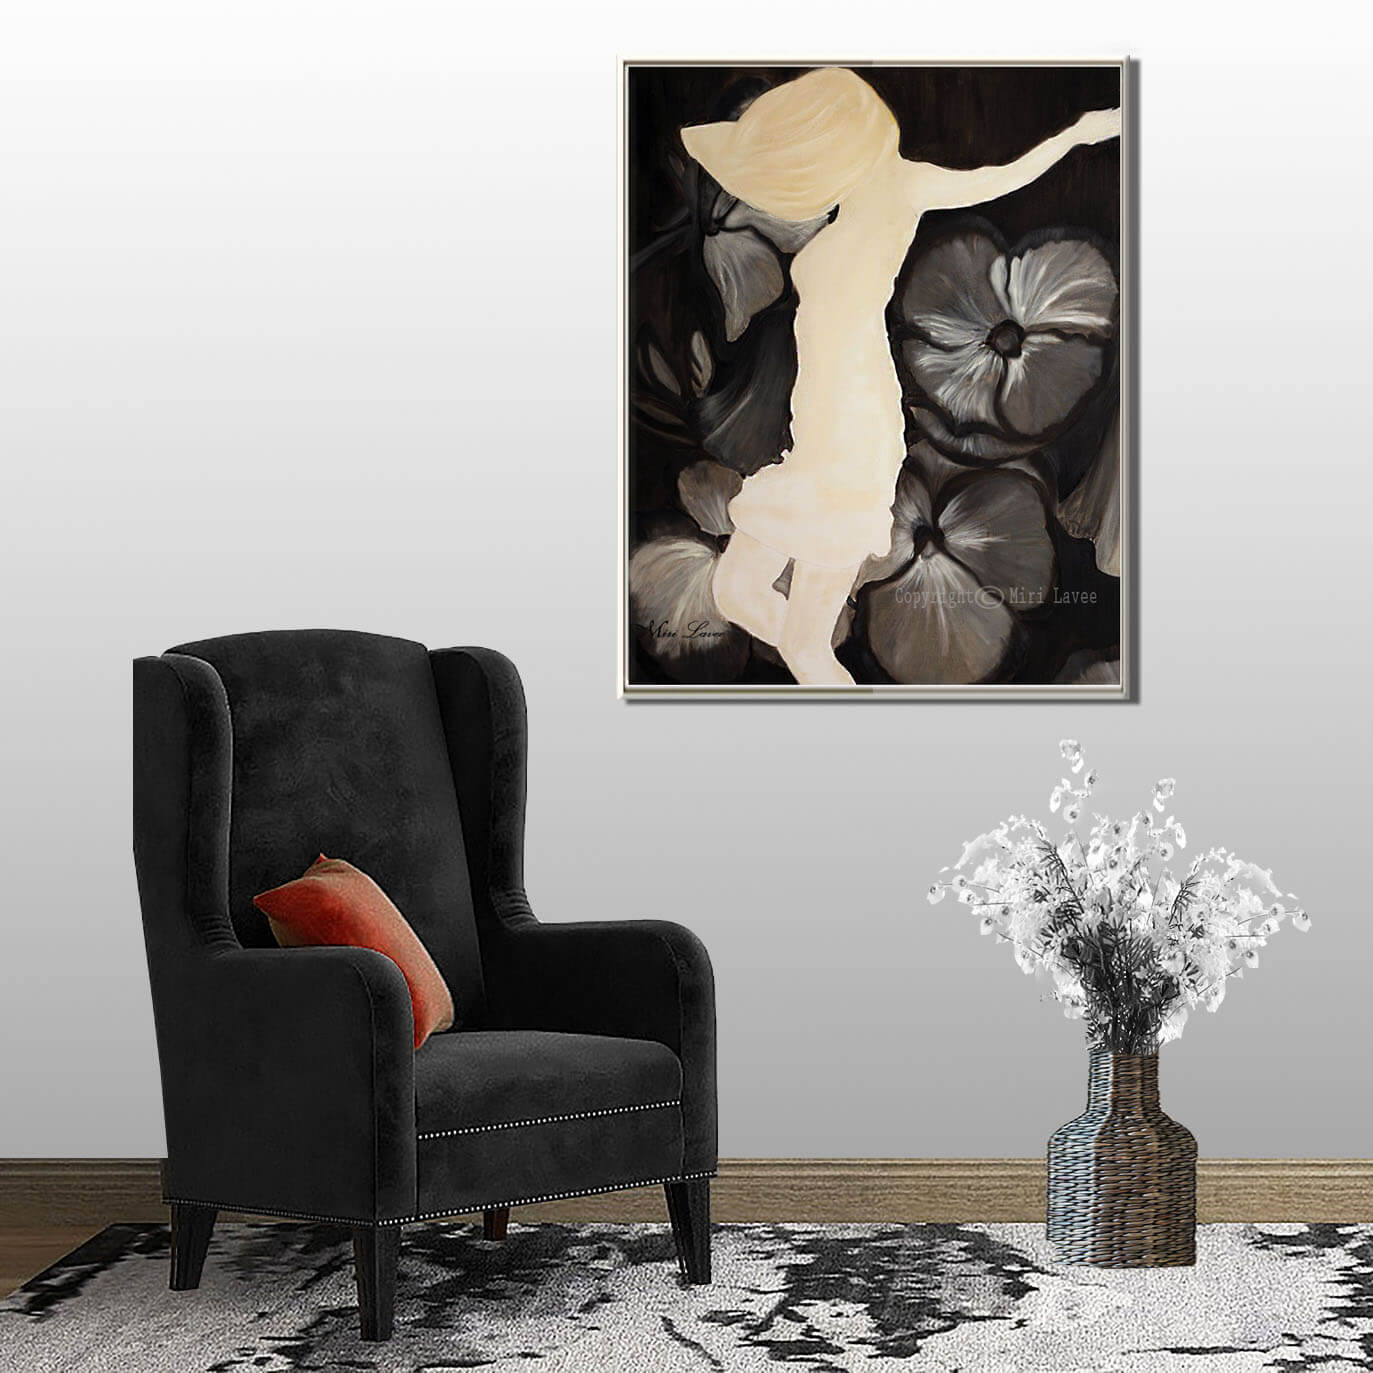 ציור רוקדת בין פרחים תמונה גדולה בשחור לבן בחדר יוקרתי מעוצב עם כורסא שחורה ציירת מירי לביא